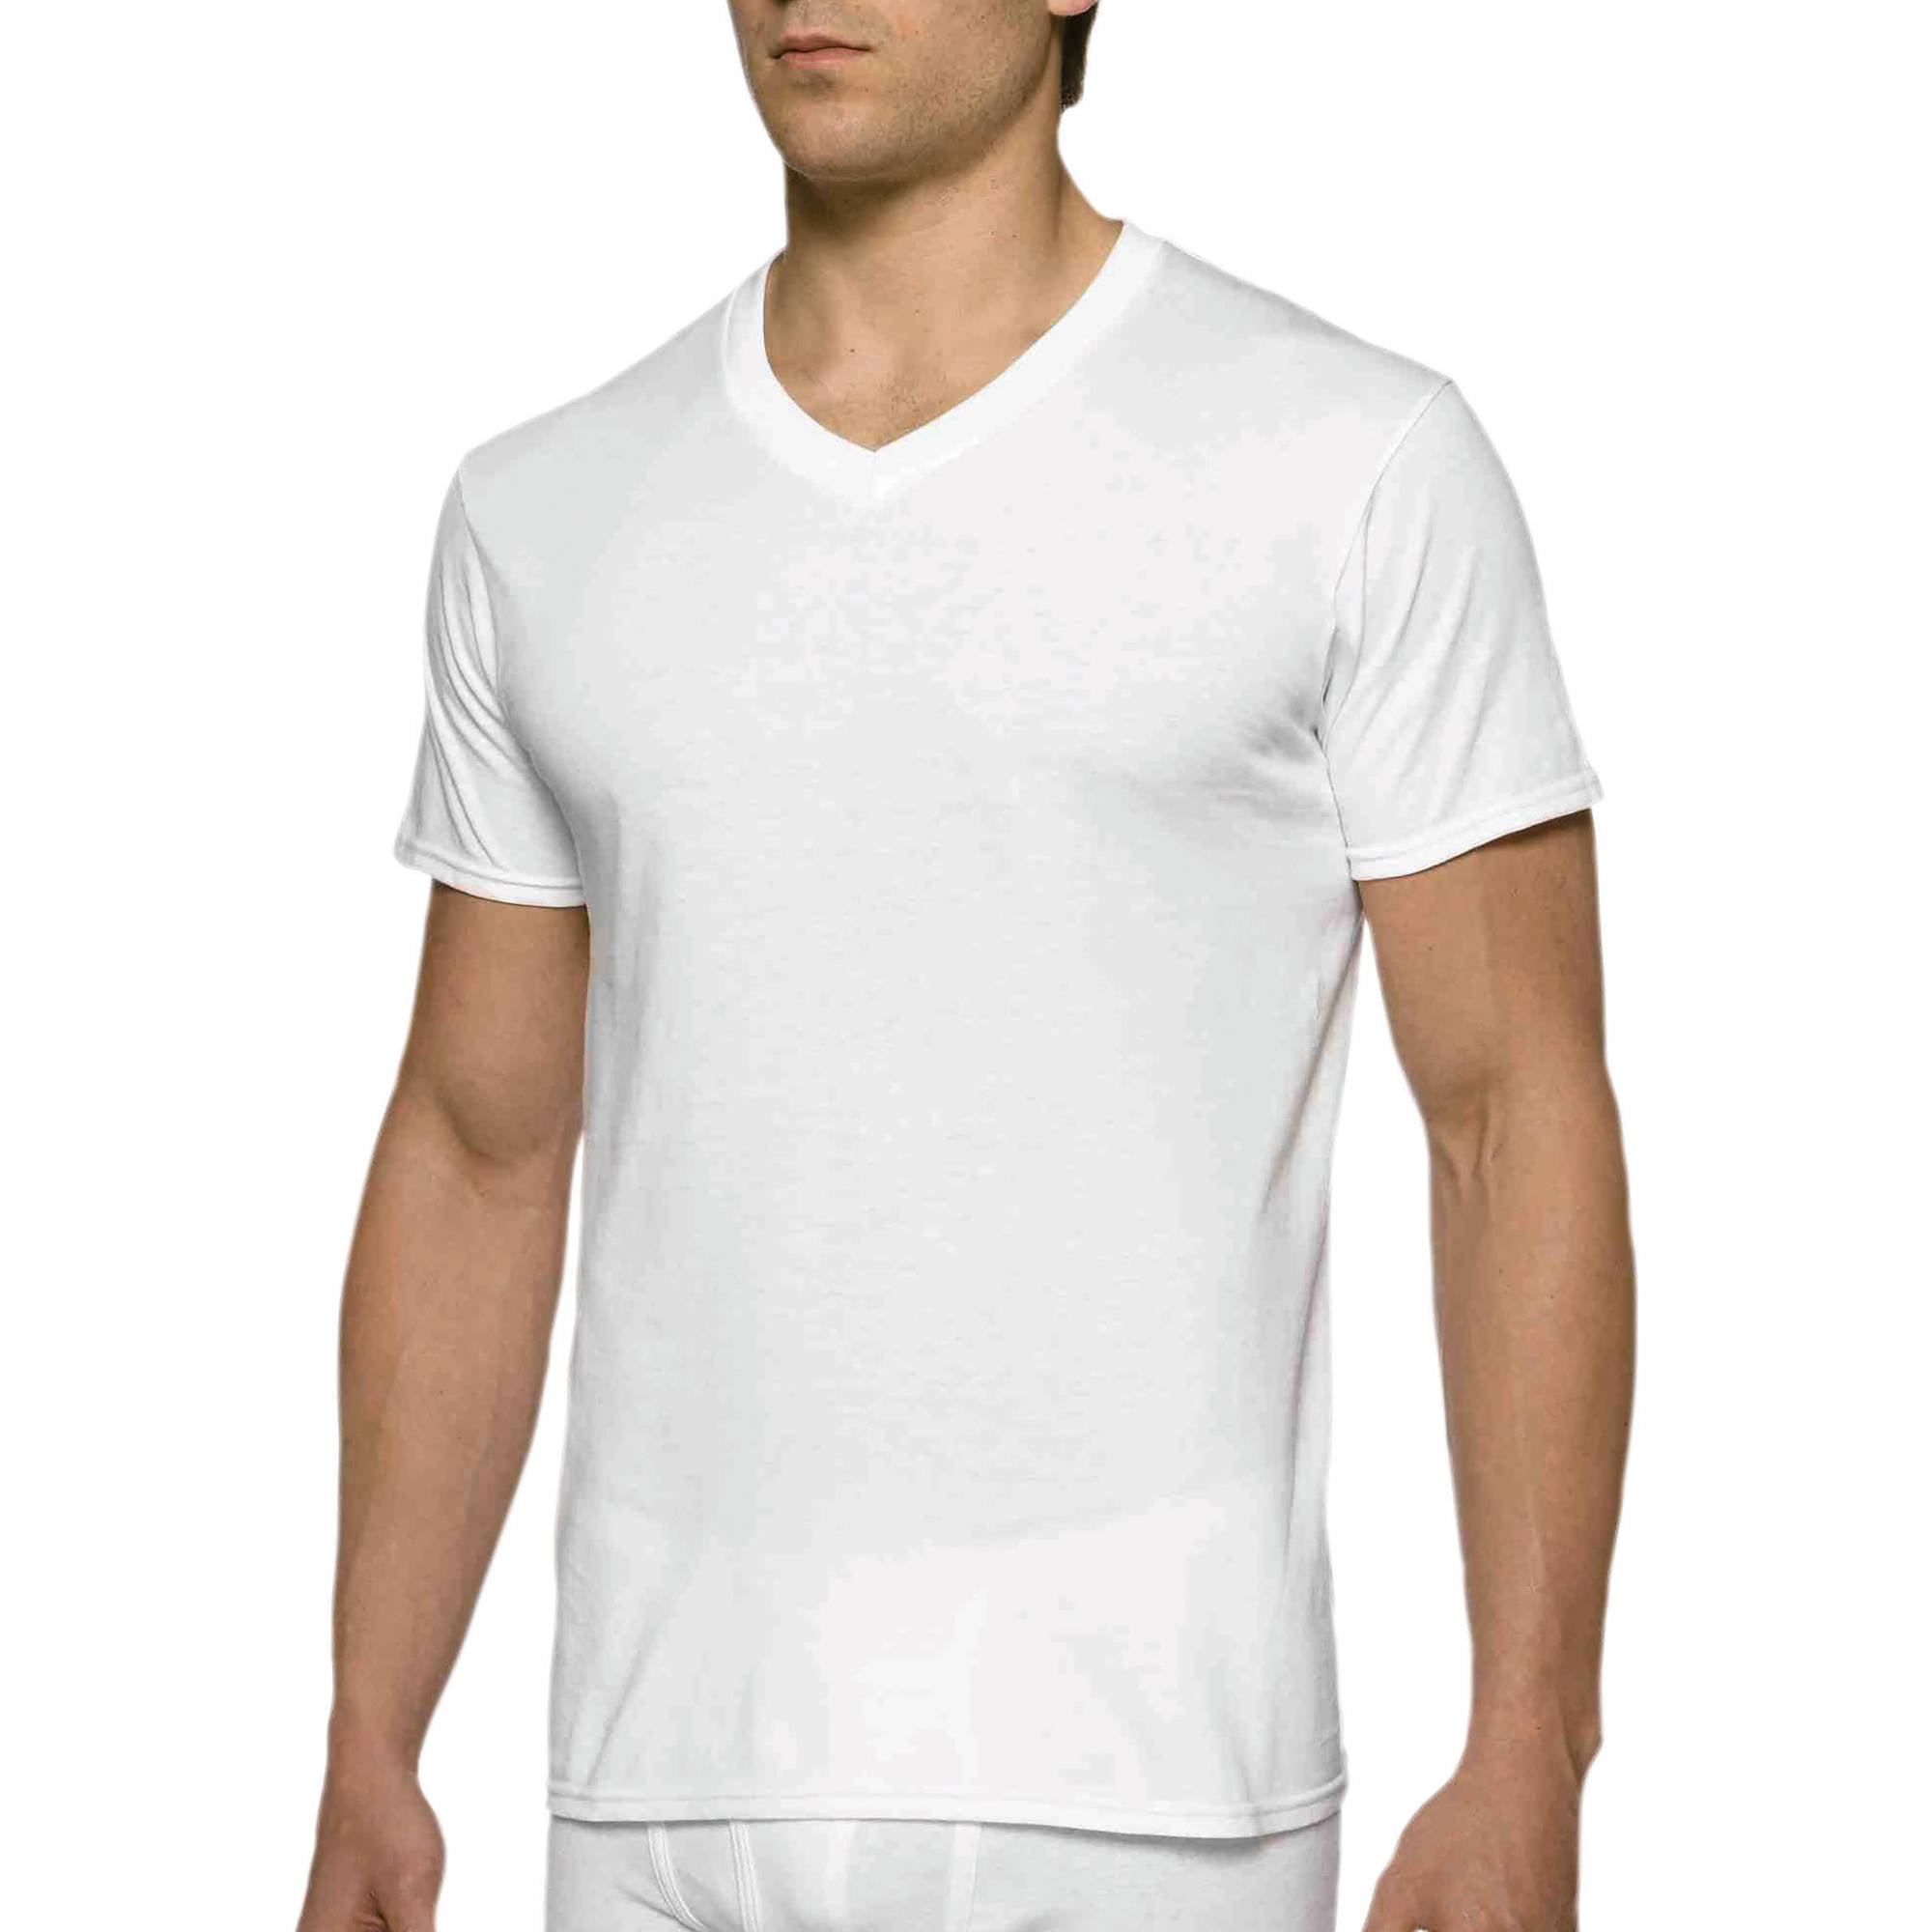 Gildan - Gildan Men's Short Sleeve V-Neck White T-Shirt, 3-Pack ...